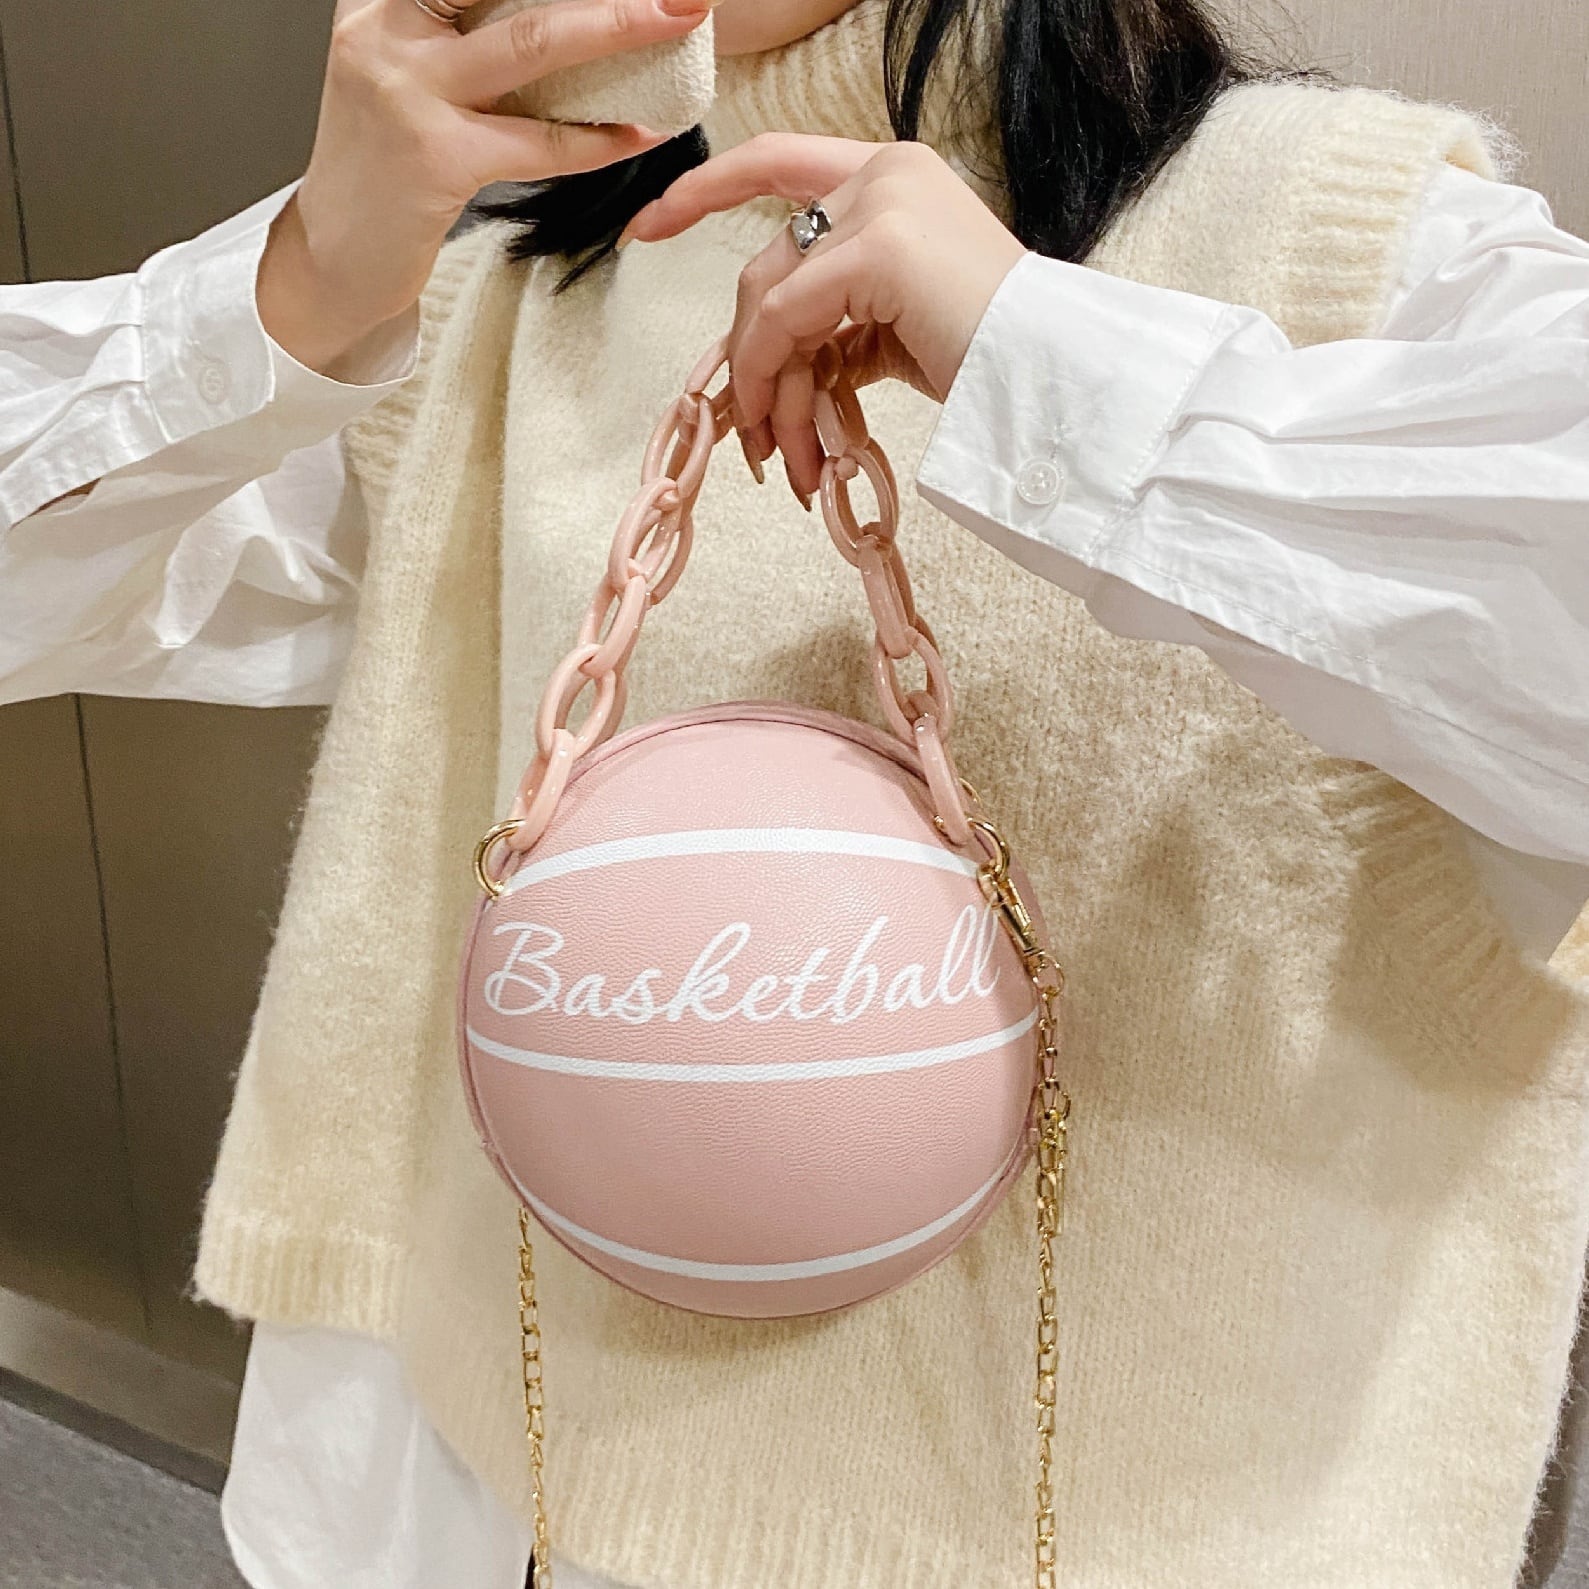 バスケットボール ハンドバッグ カバン ユニーク かわいい 直輸入 ブランド ショルダーバッグ ボディバッグ レディース